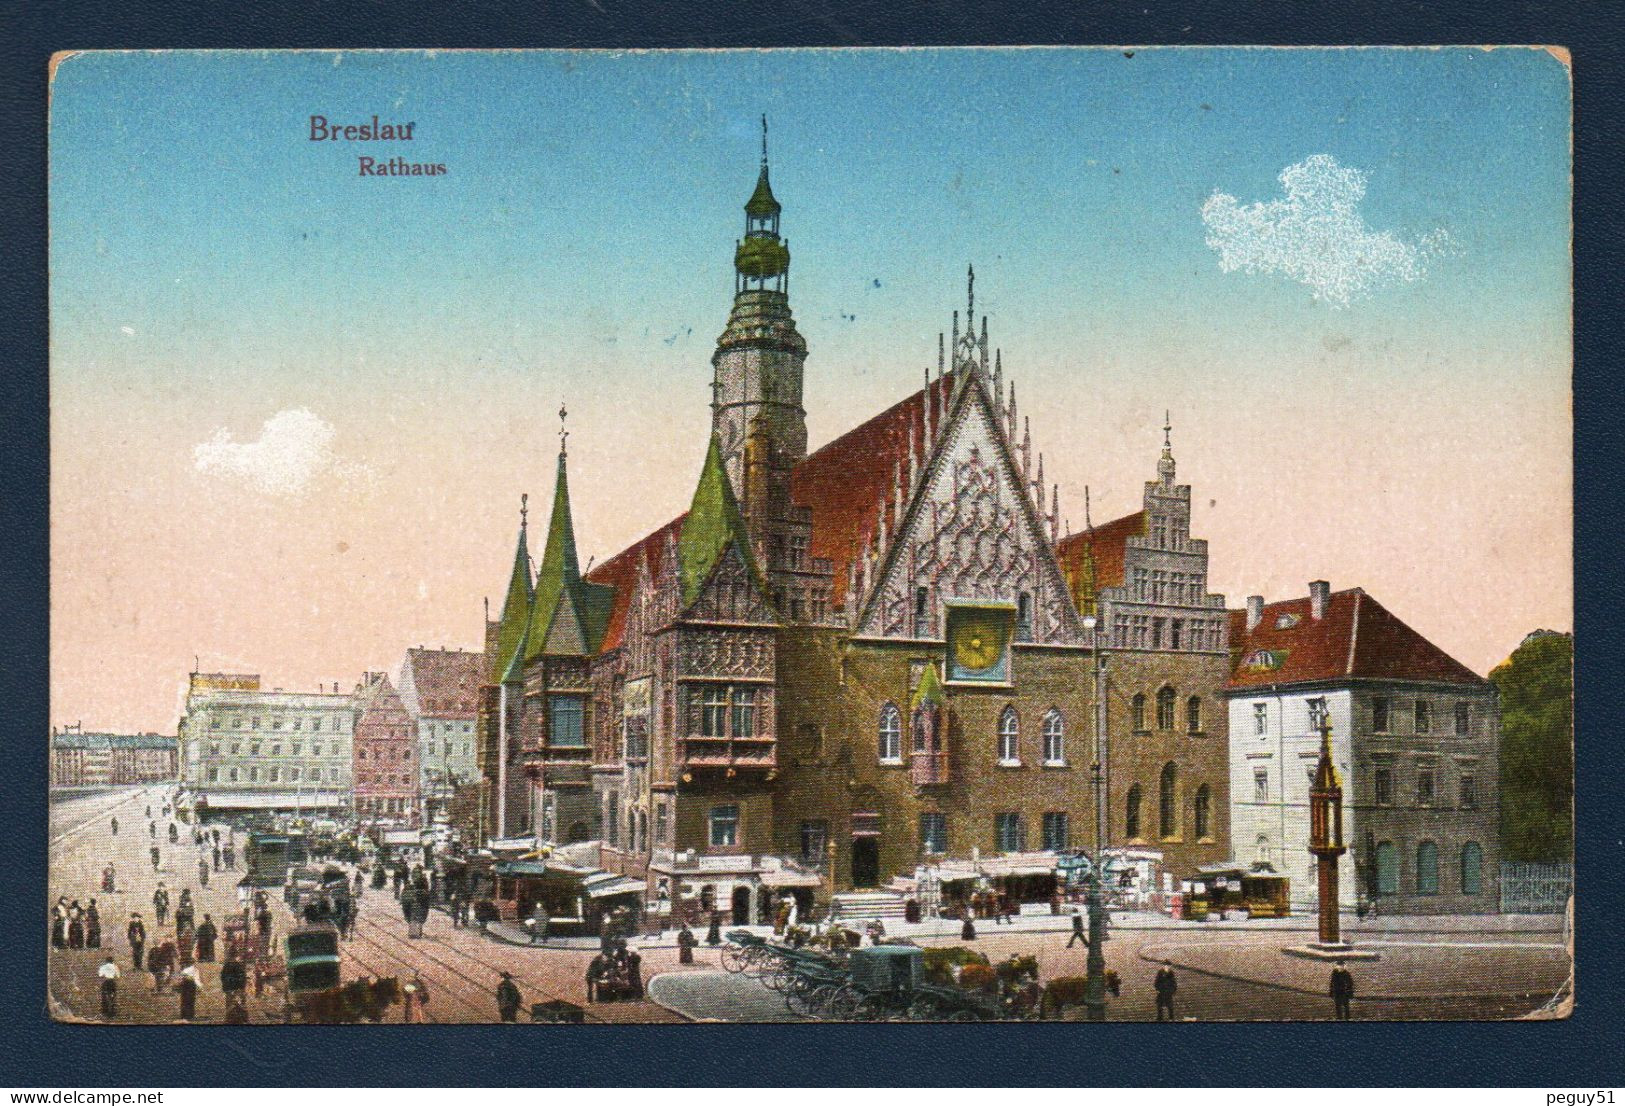 Pologne. Wroclaw (Breslau). Rathaus. Hôtel De Ville, Place Du Marché. Franchise Militaire Et Censure De Metz. 1917 - Poland